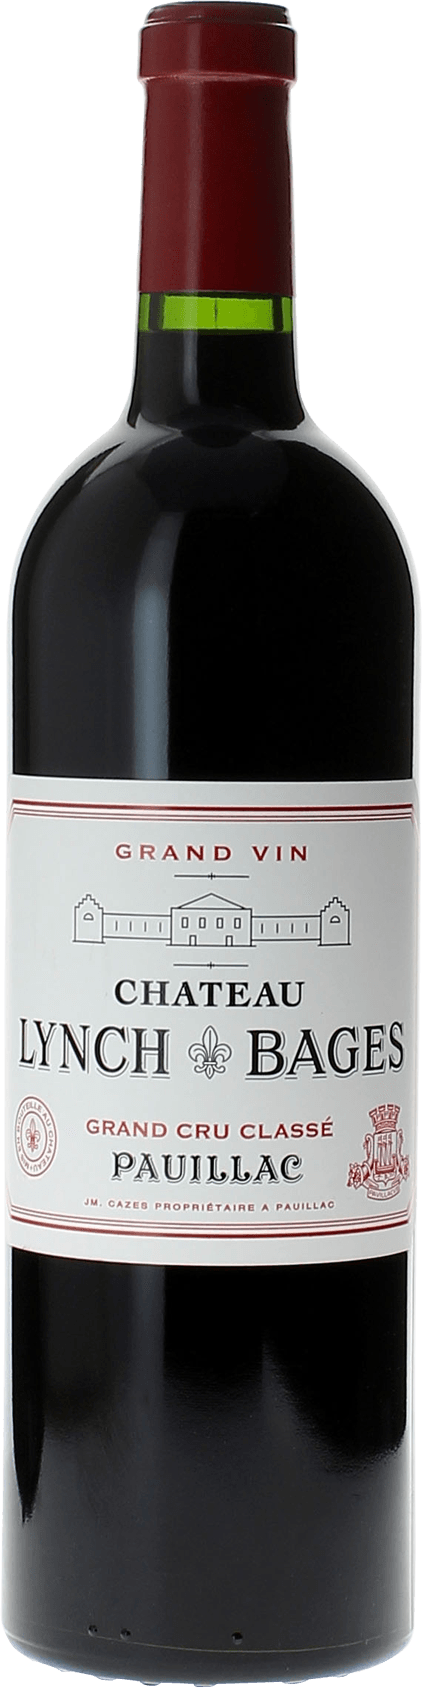 Lynch bages 1998  Pauillac, Bordeaux rouge